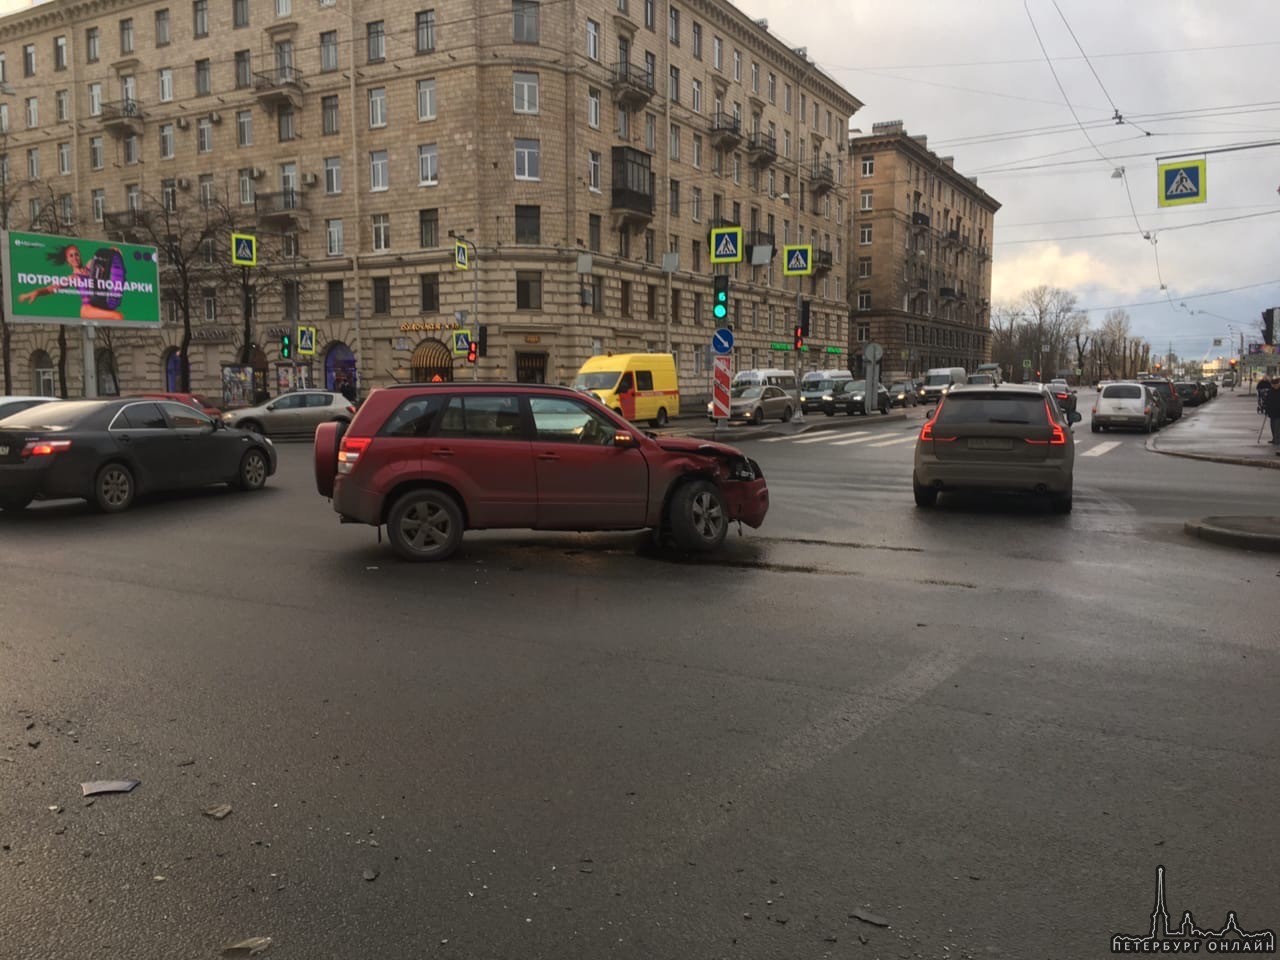 Так получилось, что на пересечении Стачек и улицы Зайцева столкнулись Suzuki и Hyundai.